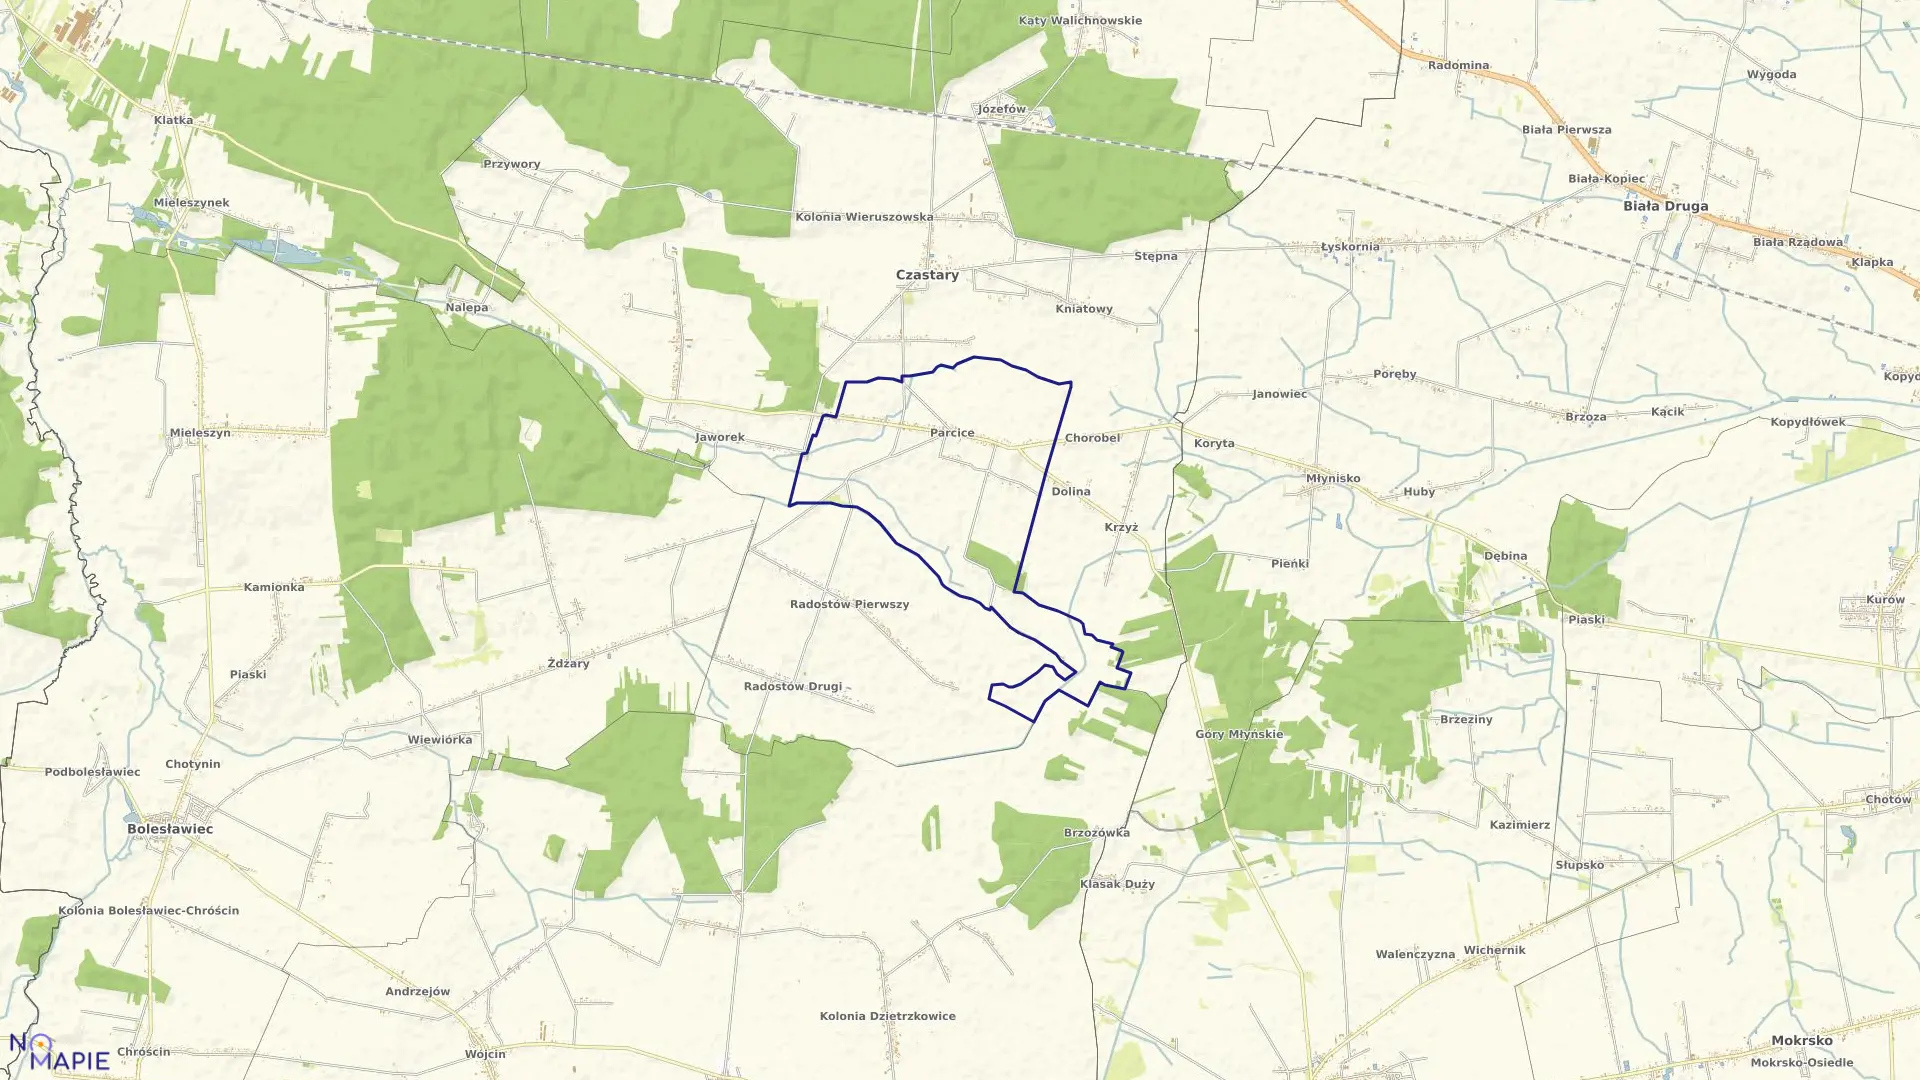 Mapa obrębu PARCICE w gminie Czastary